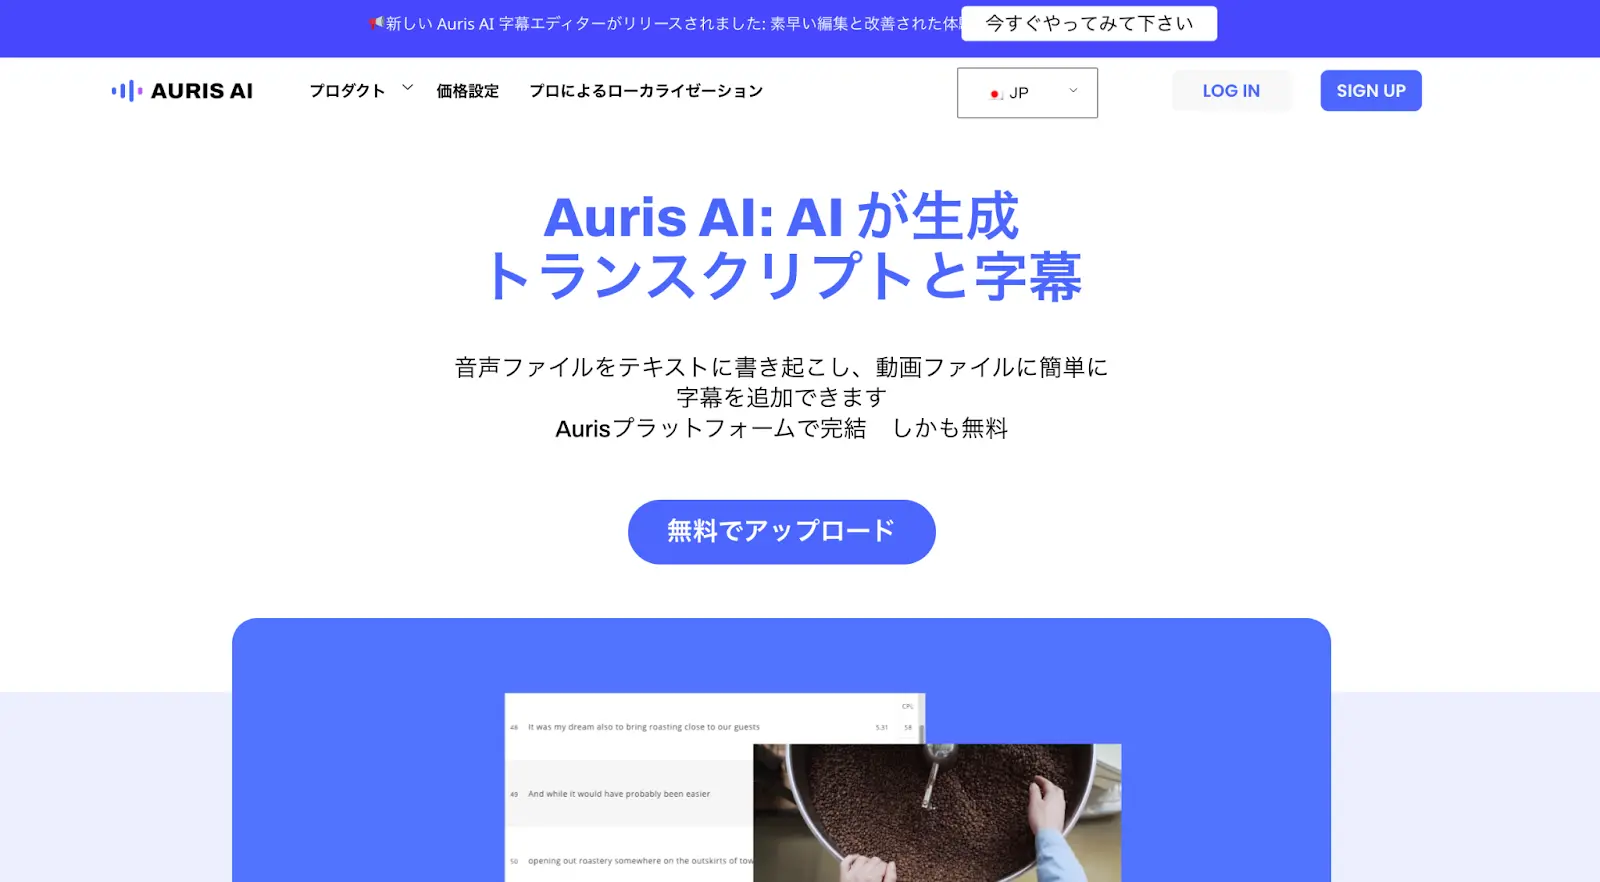 Auris AI